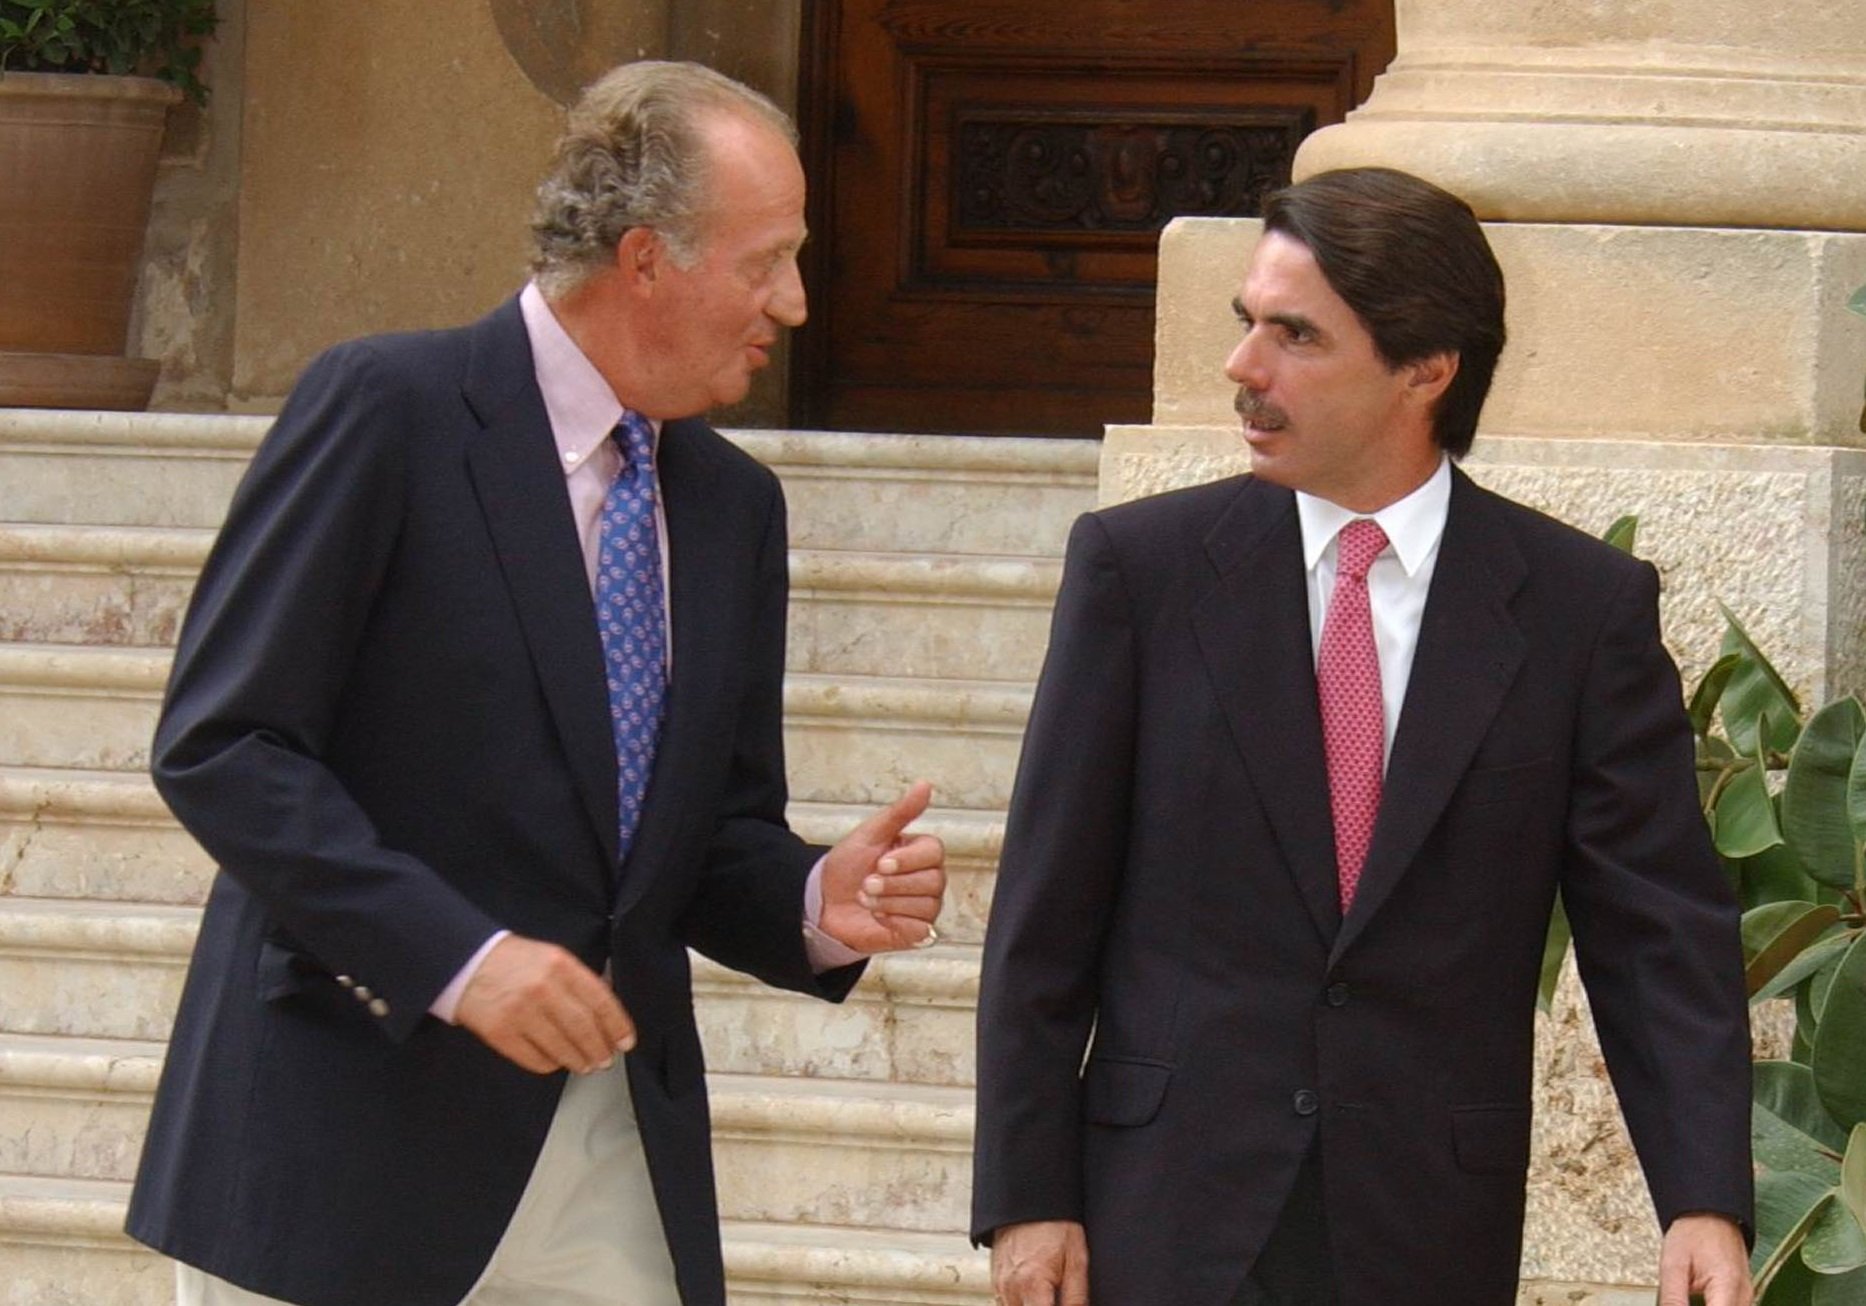 El rey Juan Carlos I y José María Aznar en el Palacio de Marivent, el 05 de agosto de 2002 en Palma de Mallorca, España. | Foto: Getty Images